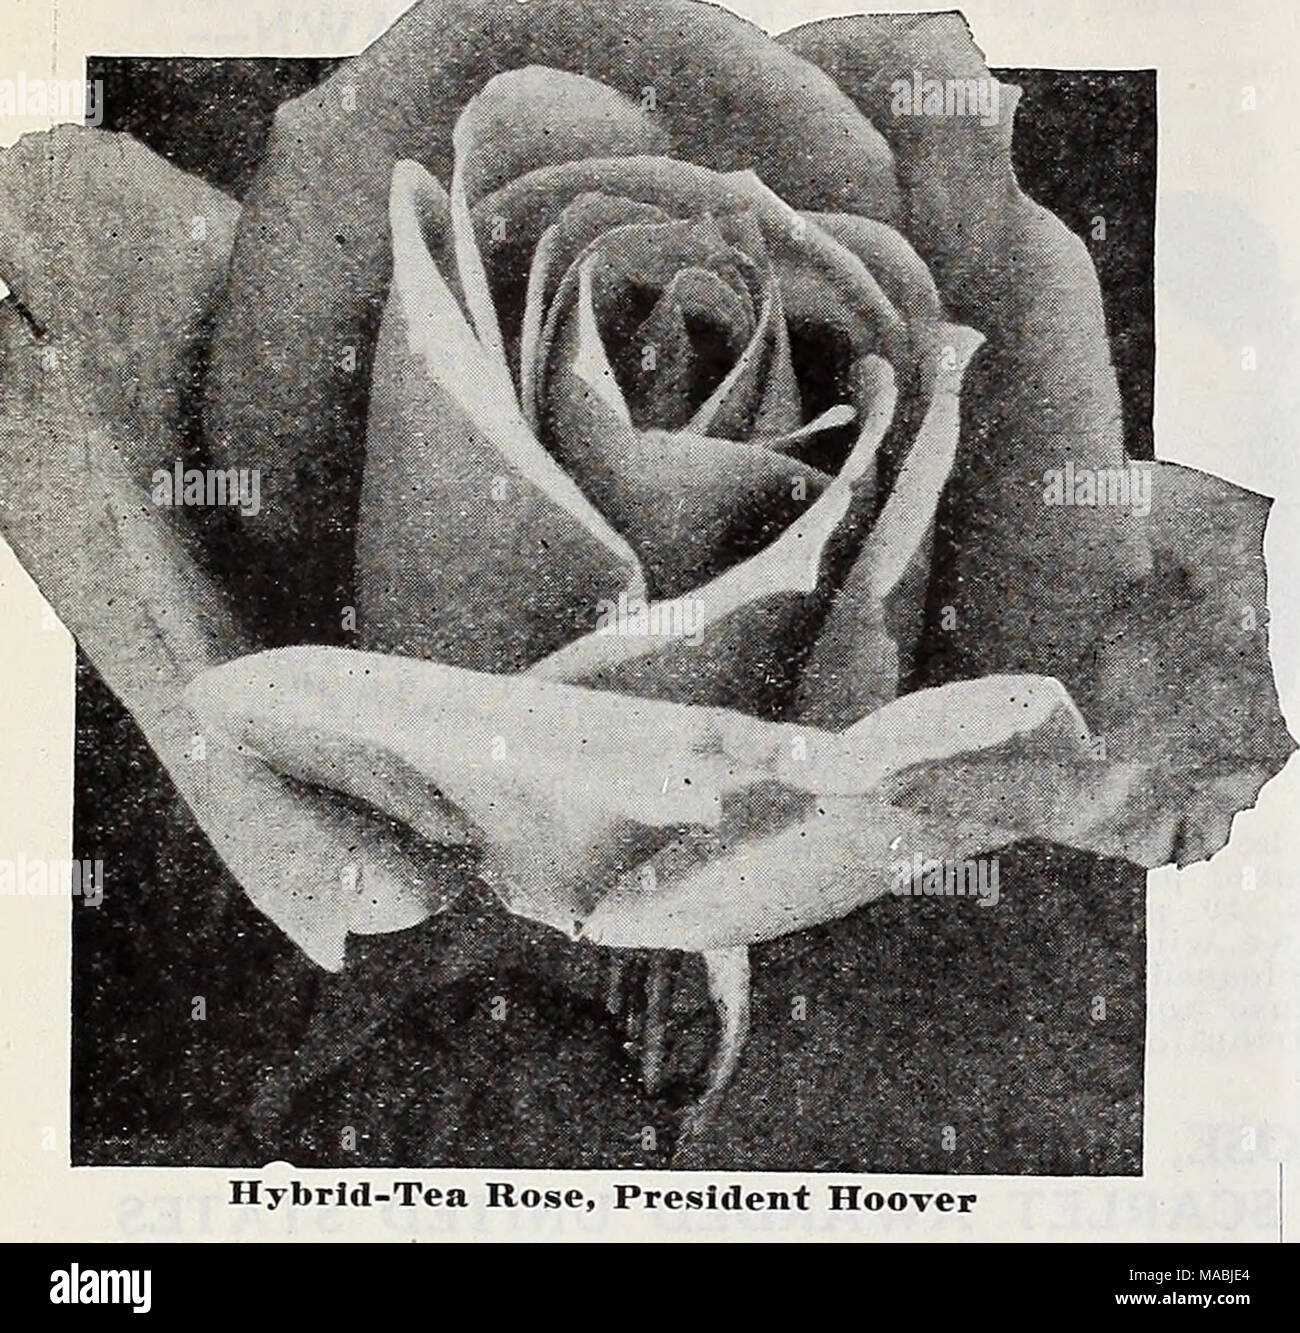 Lista de precios al por mayor del Dreer floristerías : lámparas flor  semillas de césped semillas de pasto plantas Extras . Hybrid-Tea Rose,  Presidente Hoover La Sra. Pierre S. du Pont.